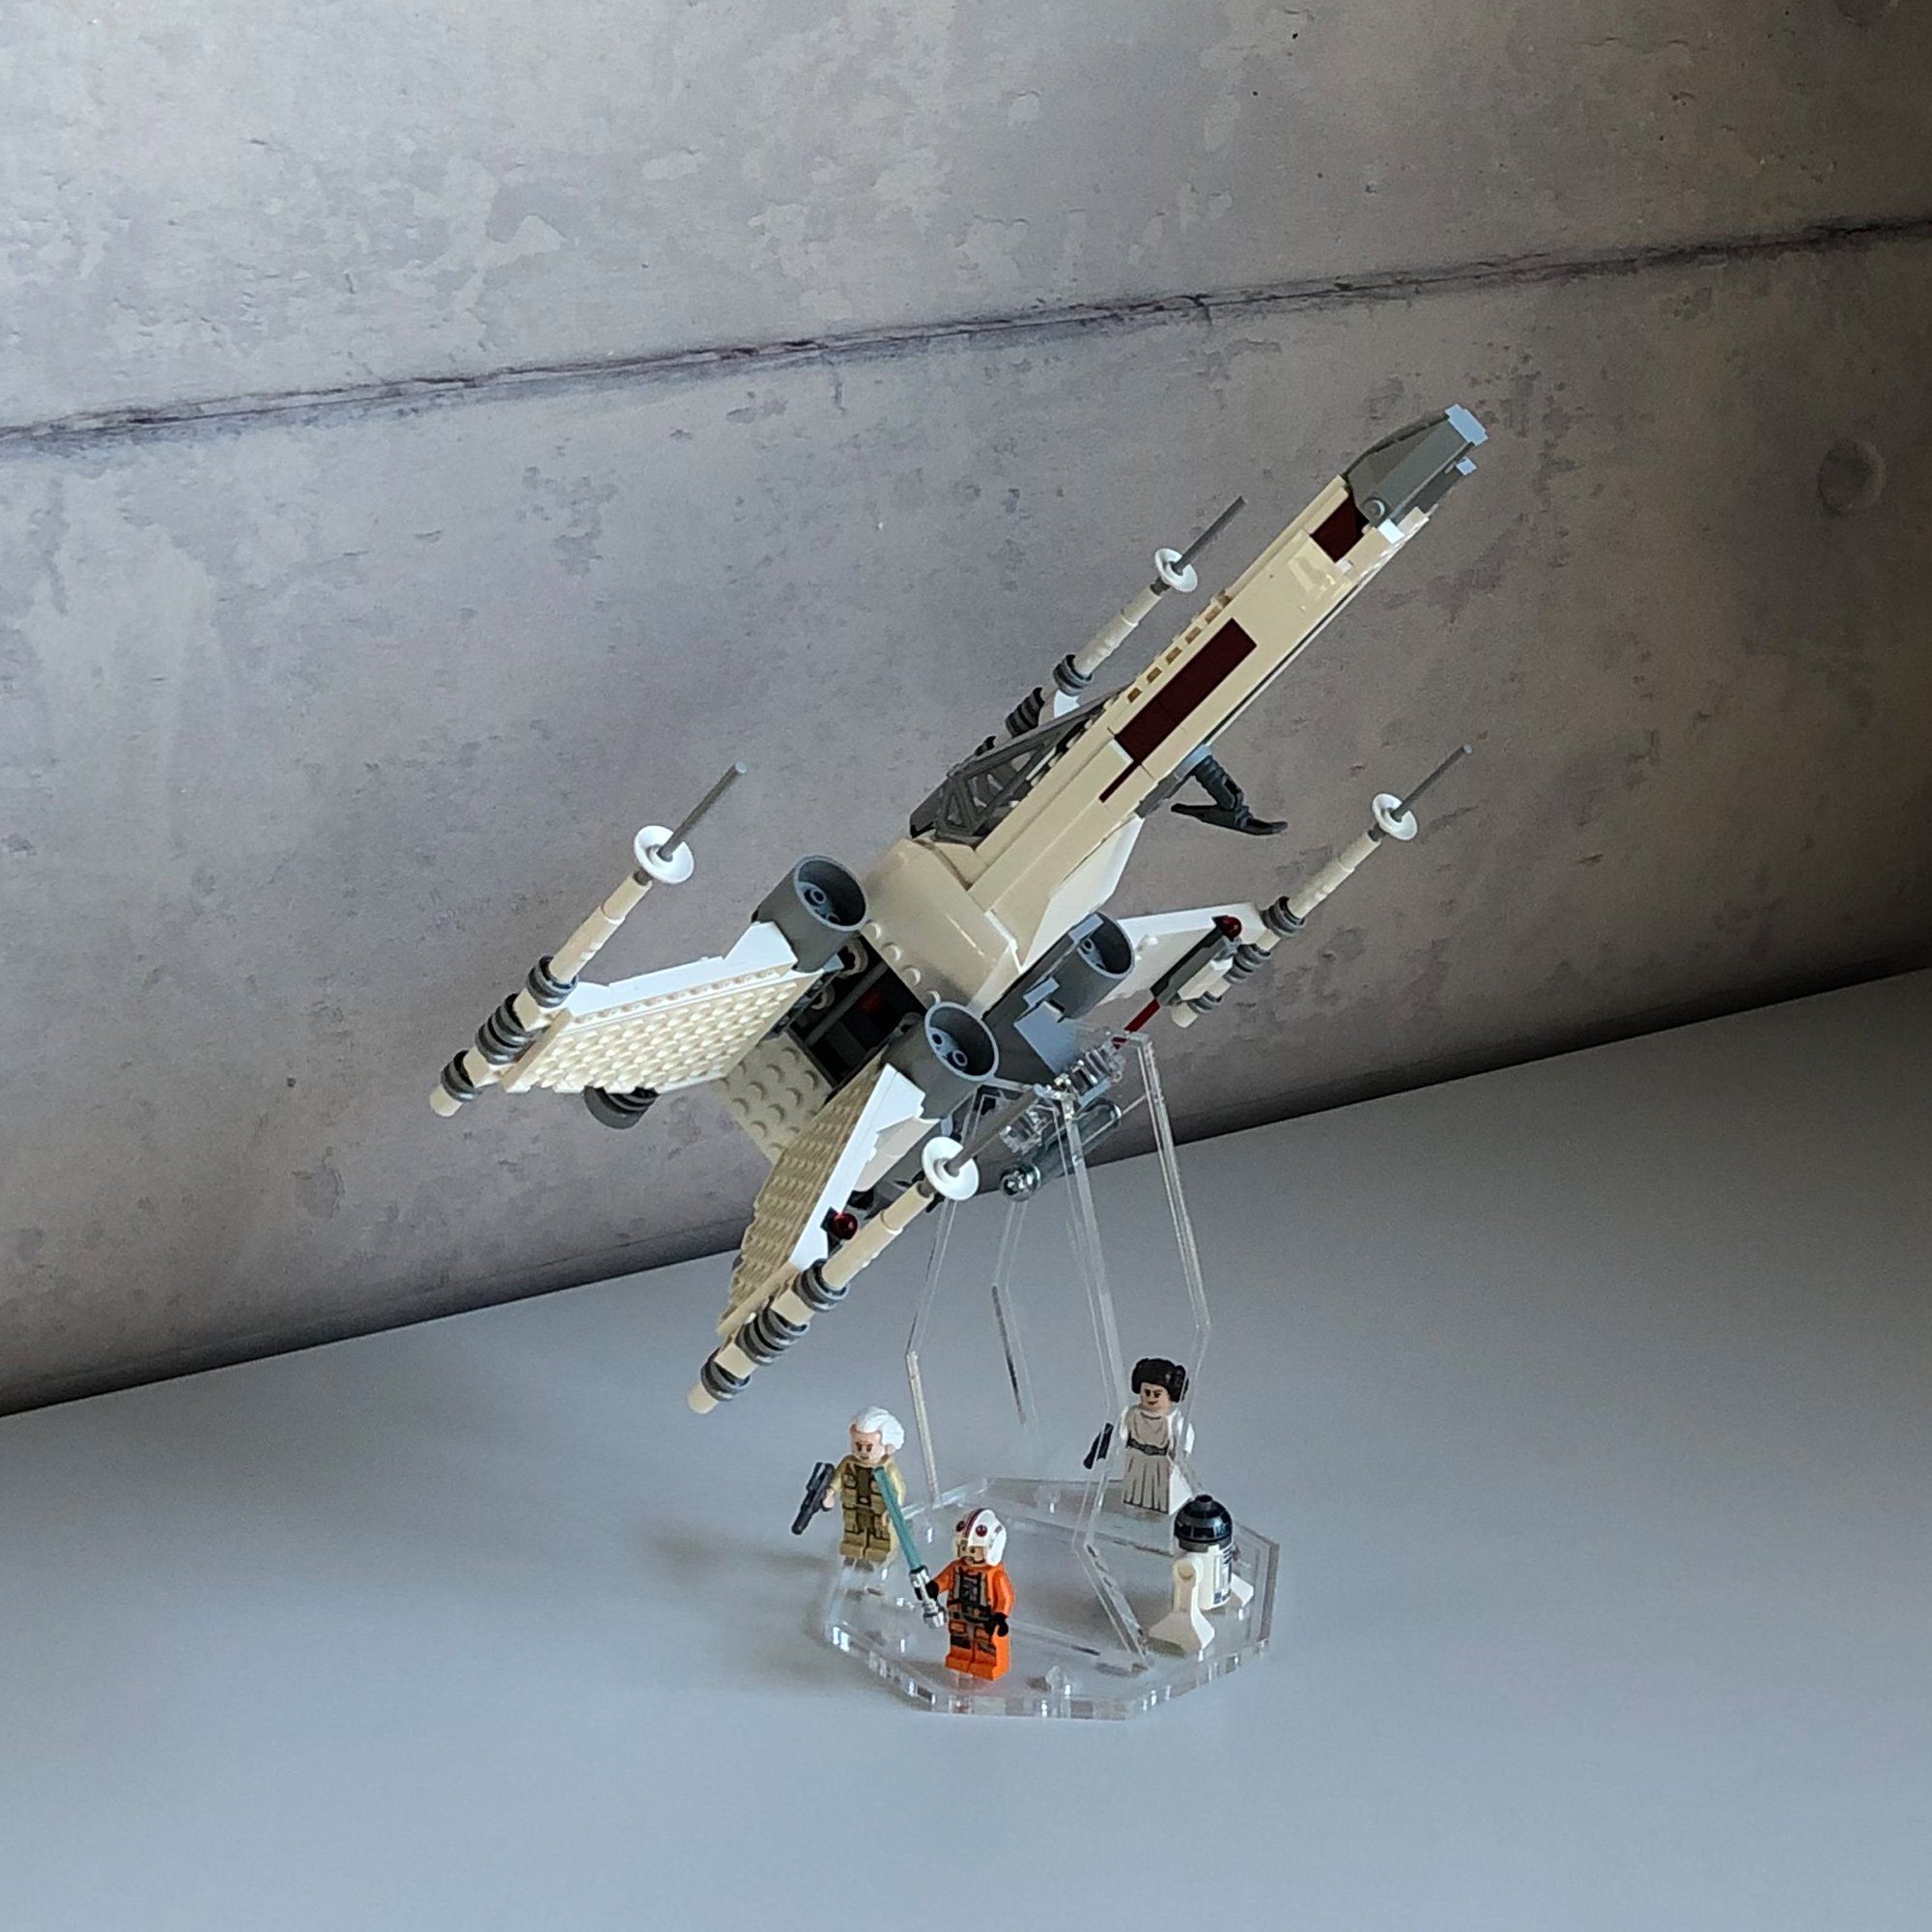 AREA17 Standfuß Acryl Display Stand für LEGO 75301 Luke Skywalker's X-Wing Fighter - 3 Größen wählbar - Acryl Standfuß - Ausstellungsständer verschiedene Winkel und Positionen einstellbar., Passend für alle LEGO 75301 und alle Modelle bei denen an der Unterseite Platz für eine der mitgelieferten Noppenplatten ist.